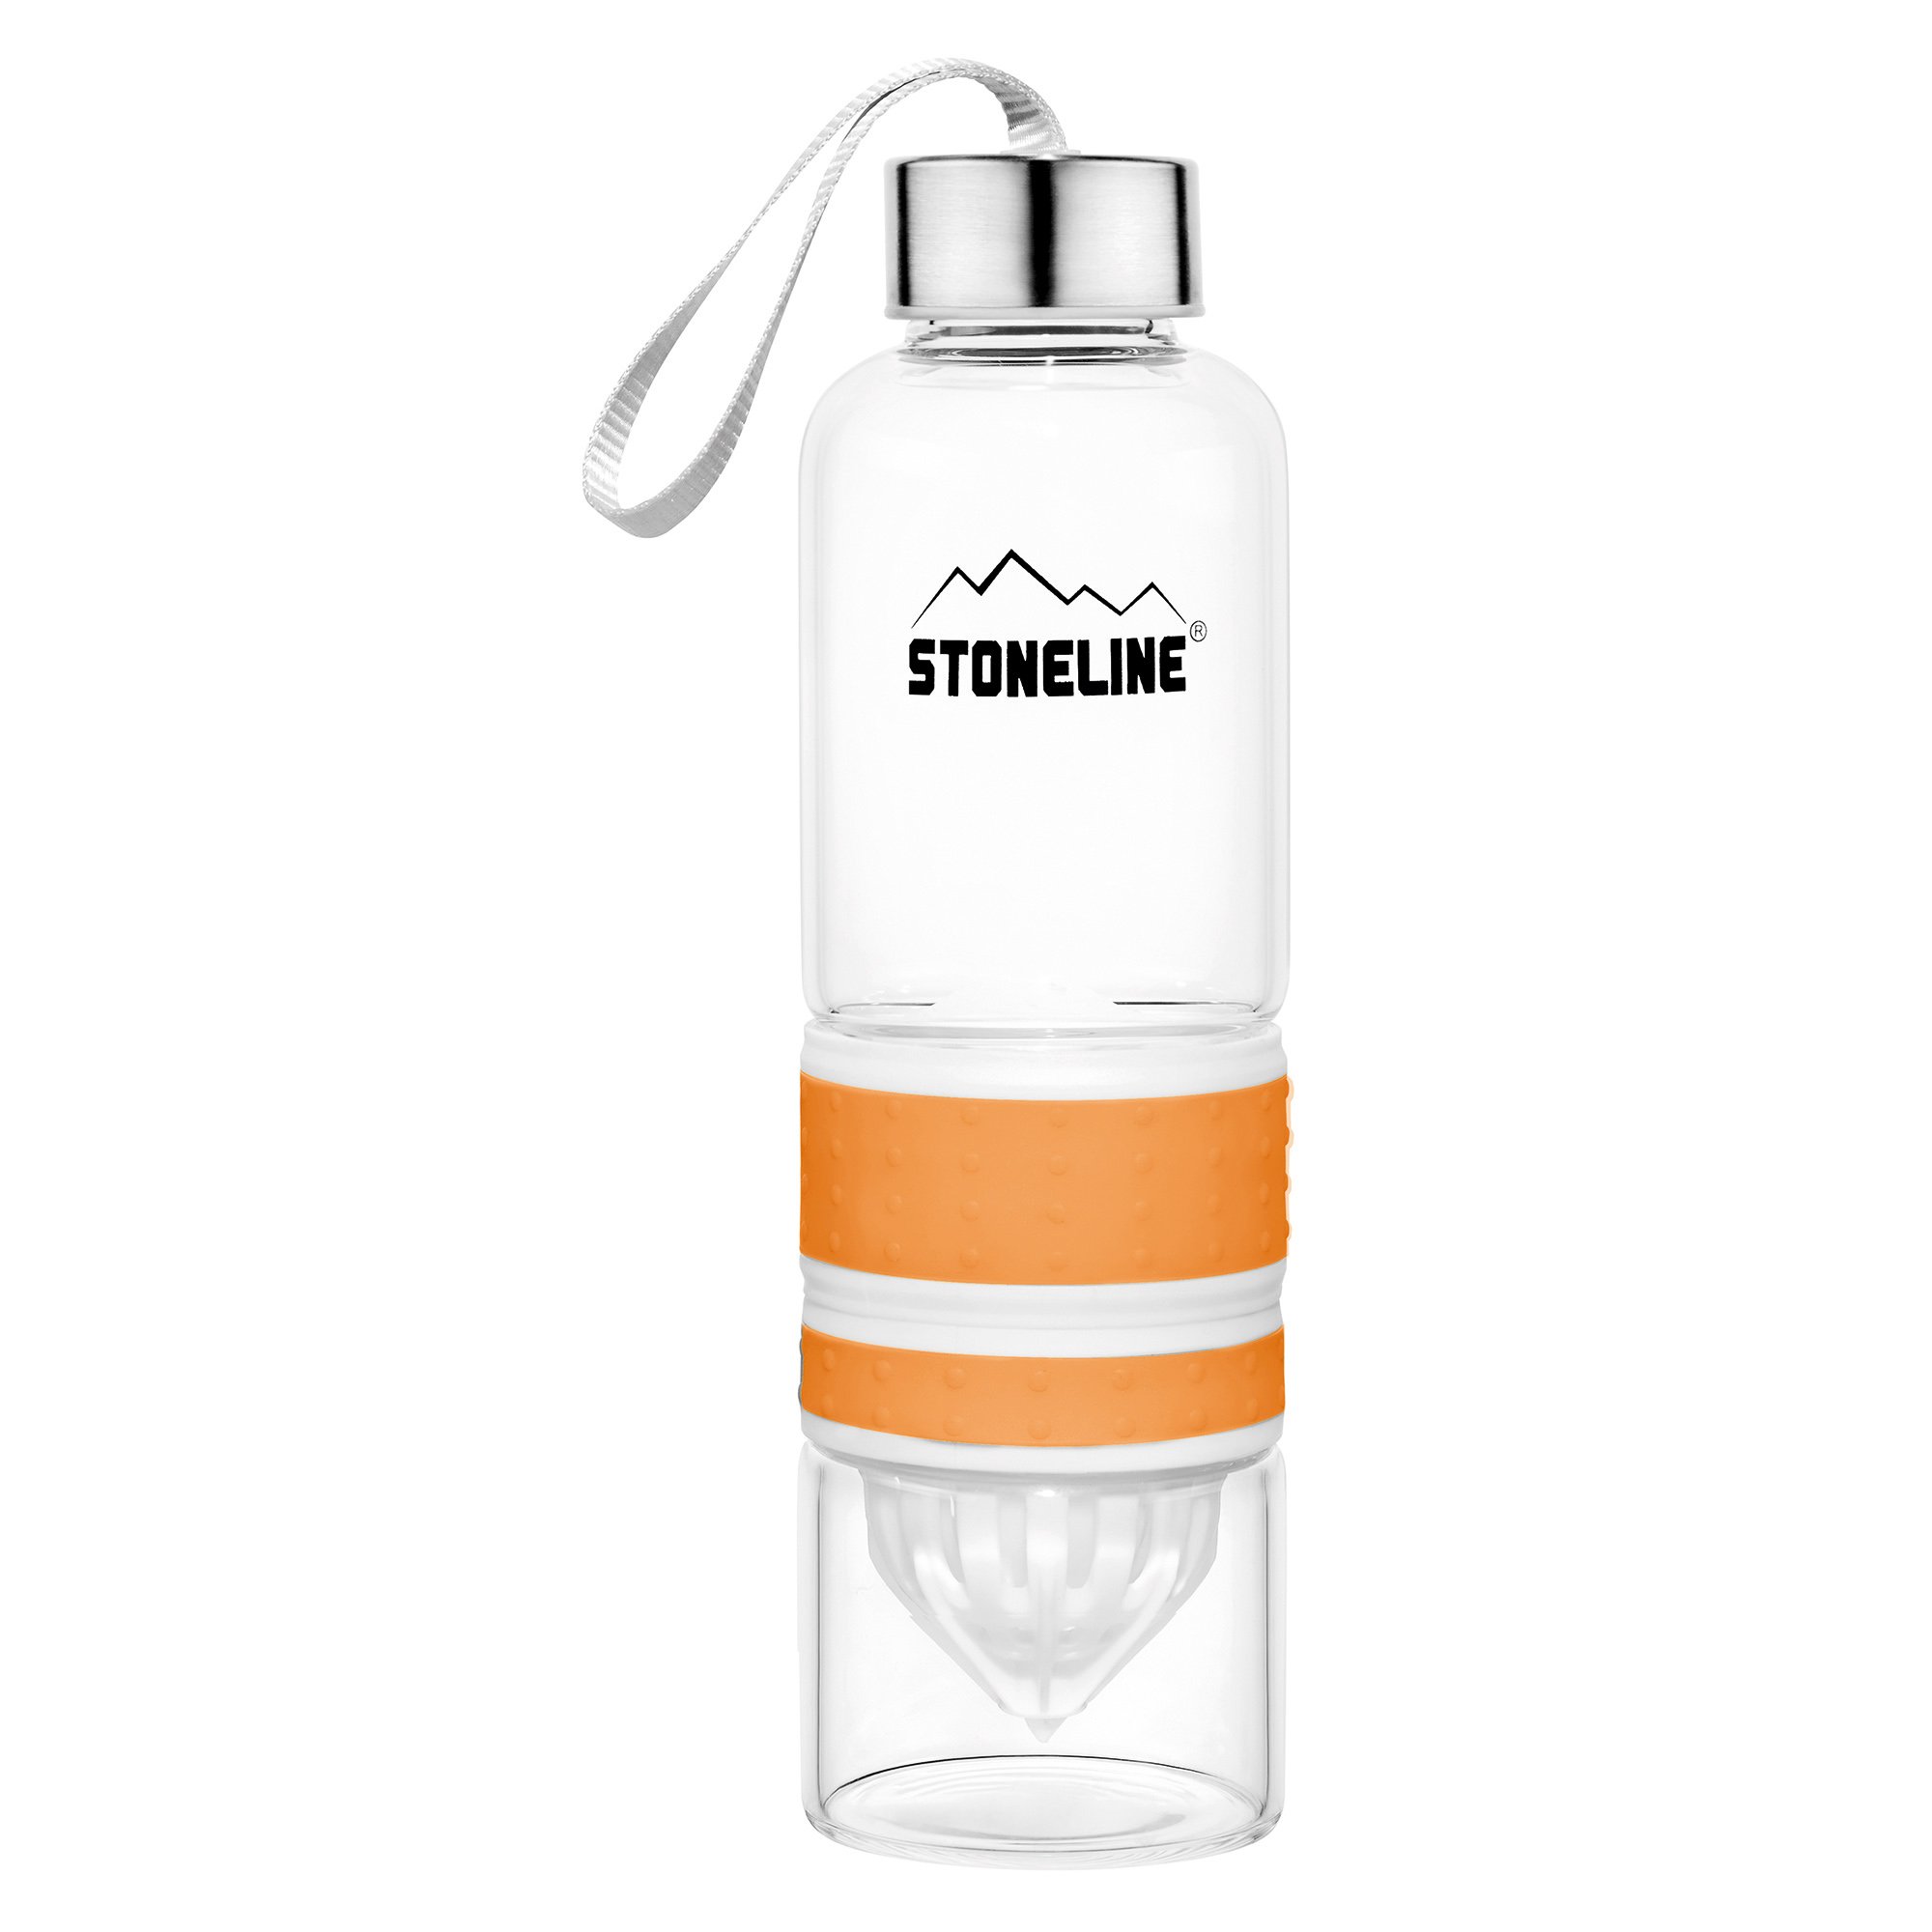 STONELINE® 2 in 1 Bottiglia con Spremiagrumi Spremifrutta manuale 550 ml | arancione